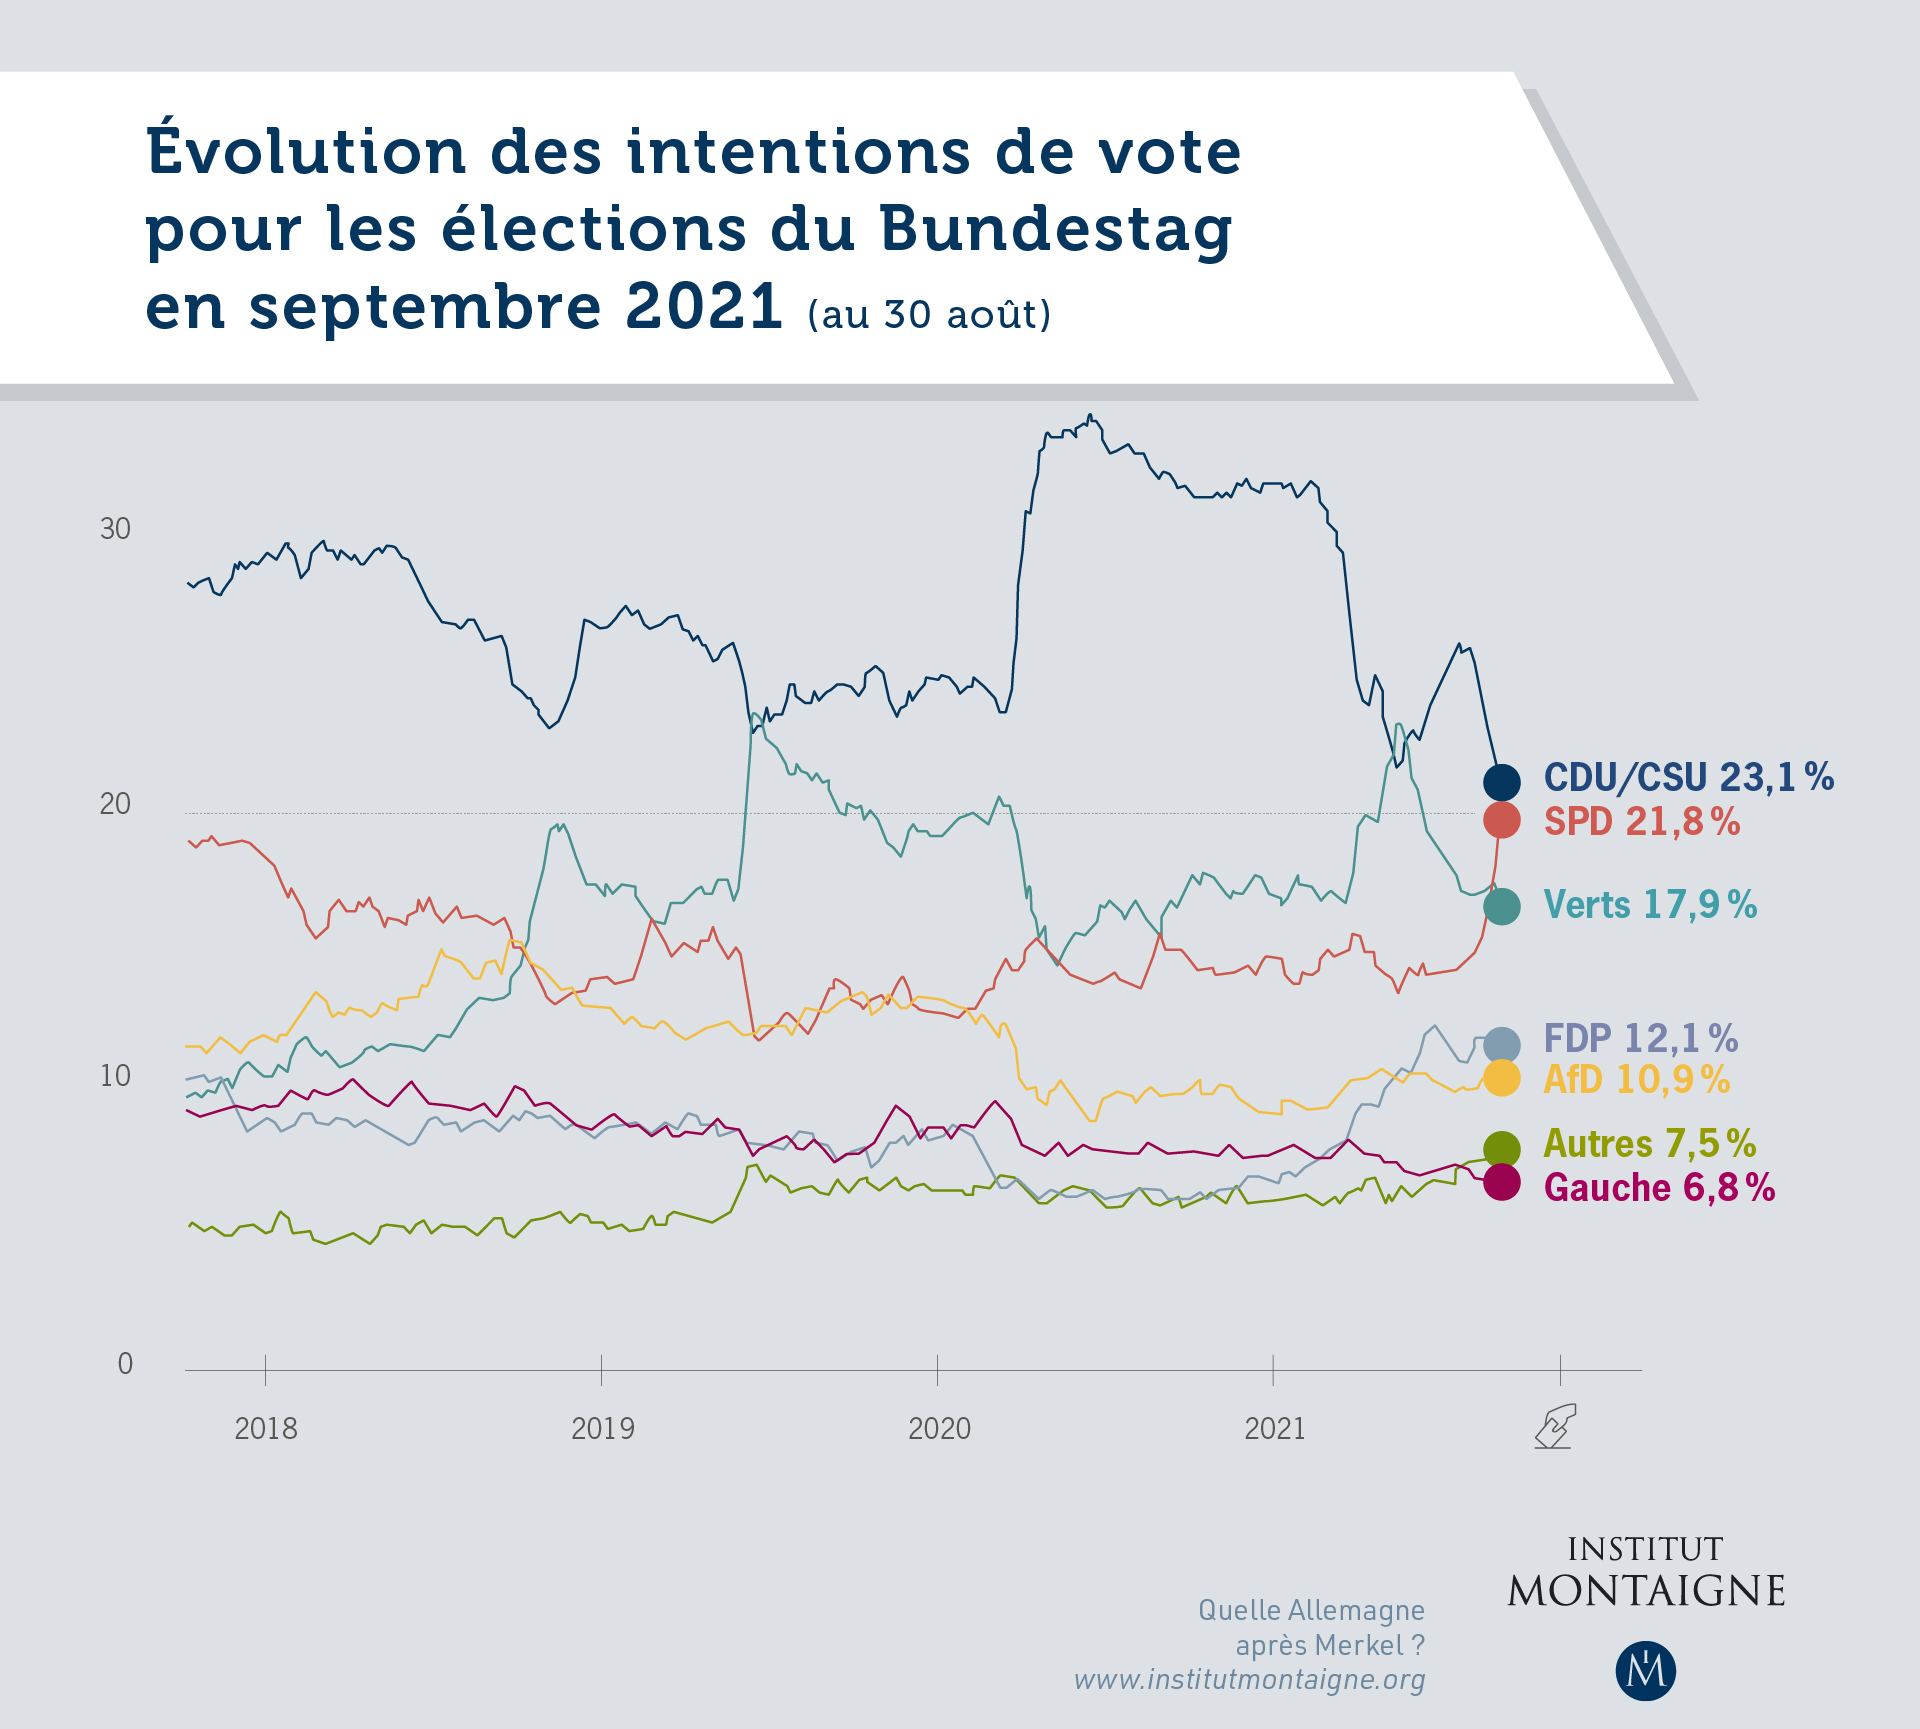 Evolution des intentions de votes pour les élections du Bundestag en septembre 2021